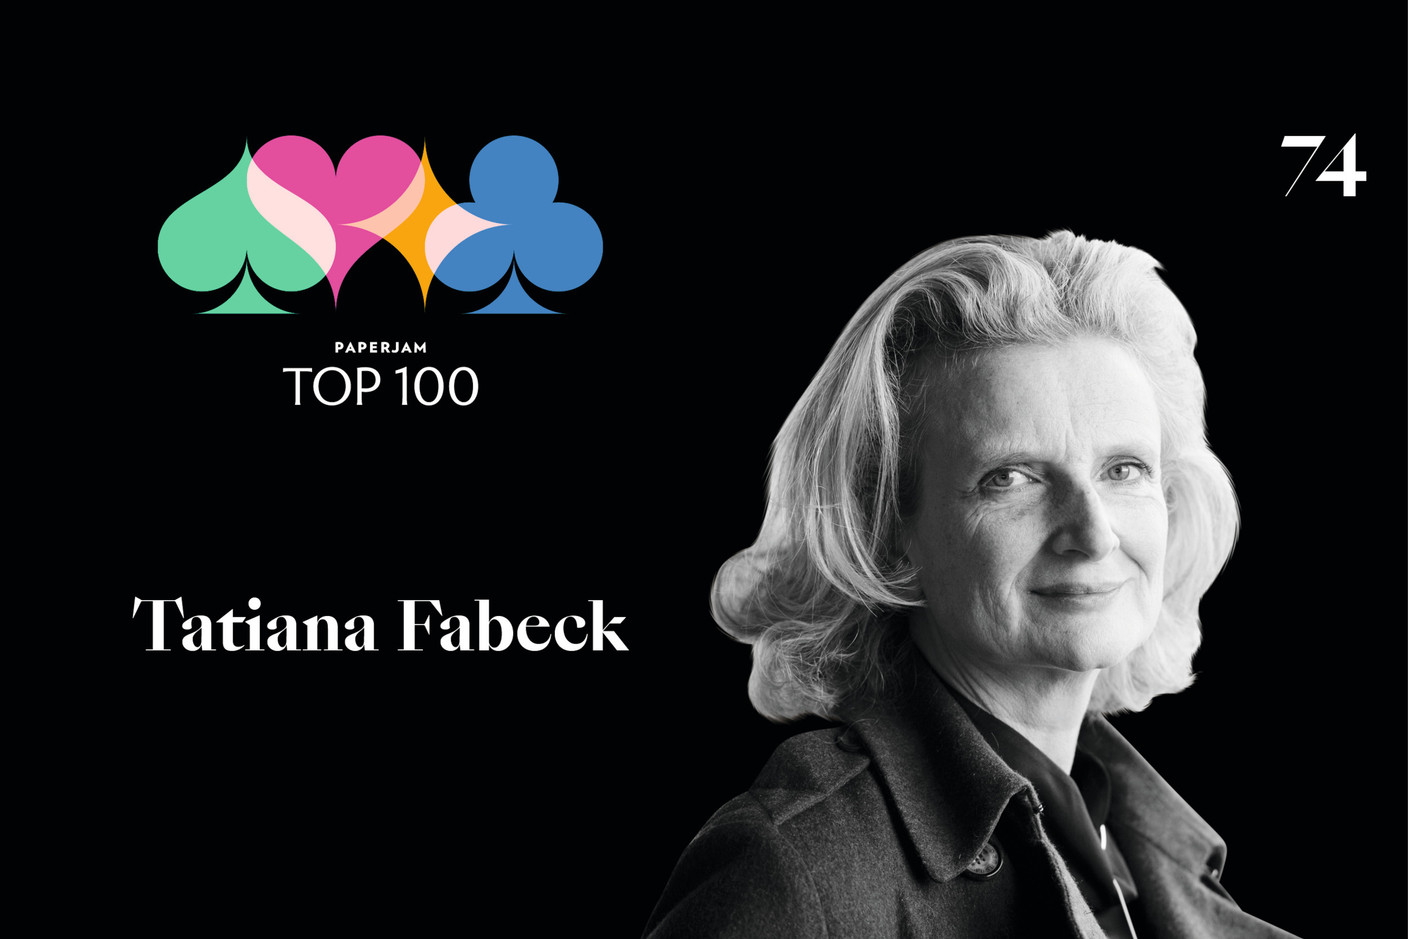 Tatiana Fabeck, 74e du Paperjam Top 100 2020. (Illustration: Maison Moderne)